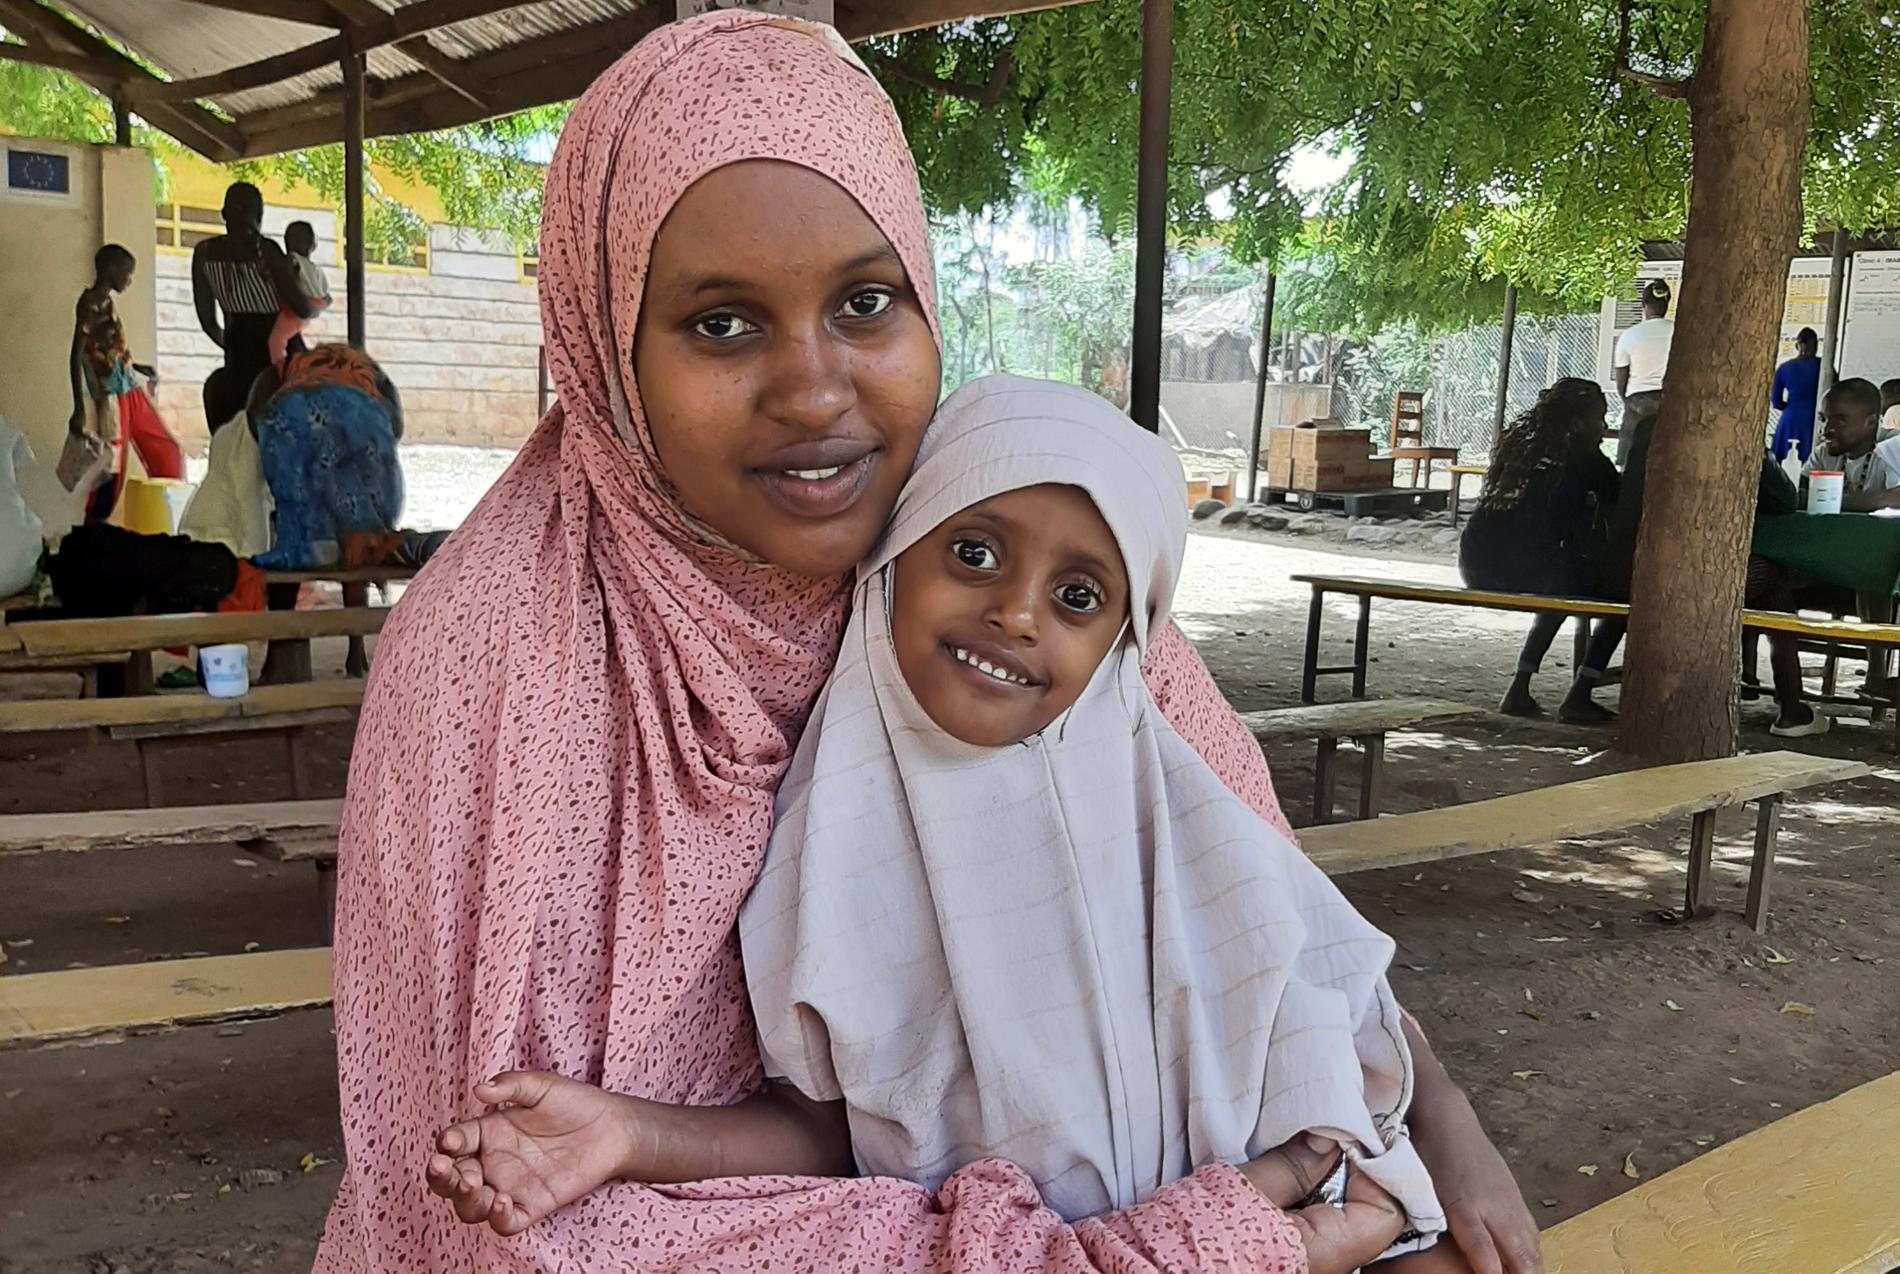 Salma mår i dag bra, tack vare den hjälp hon fått från kliniken med olika former av näringstillskott. Hennes mamma Leyla säger att hon är enormt tacksam över att hon får se sin dotter leka igen. 